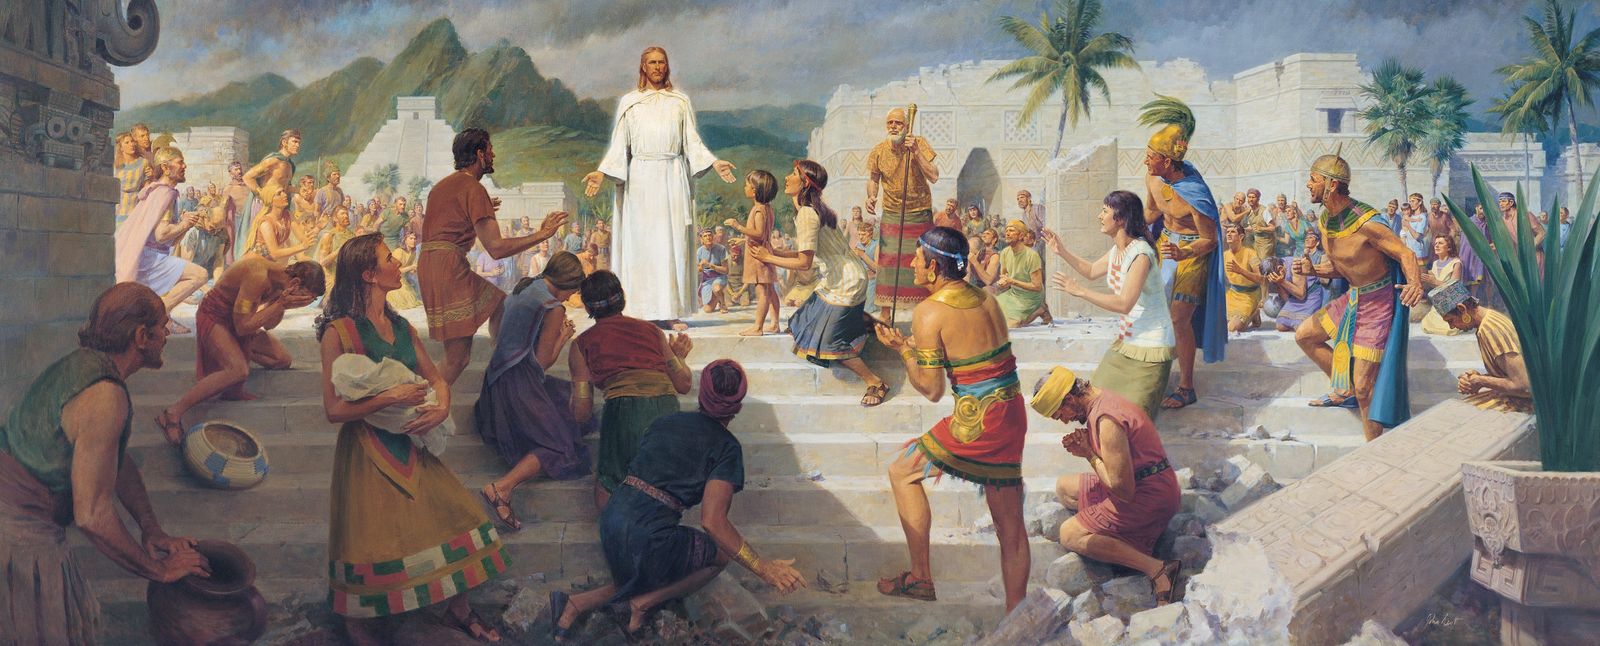 Jesus Teaching in the Western Hemisphere (Jesus Christ Visits the Americas)